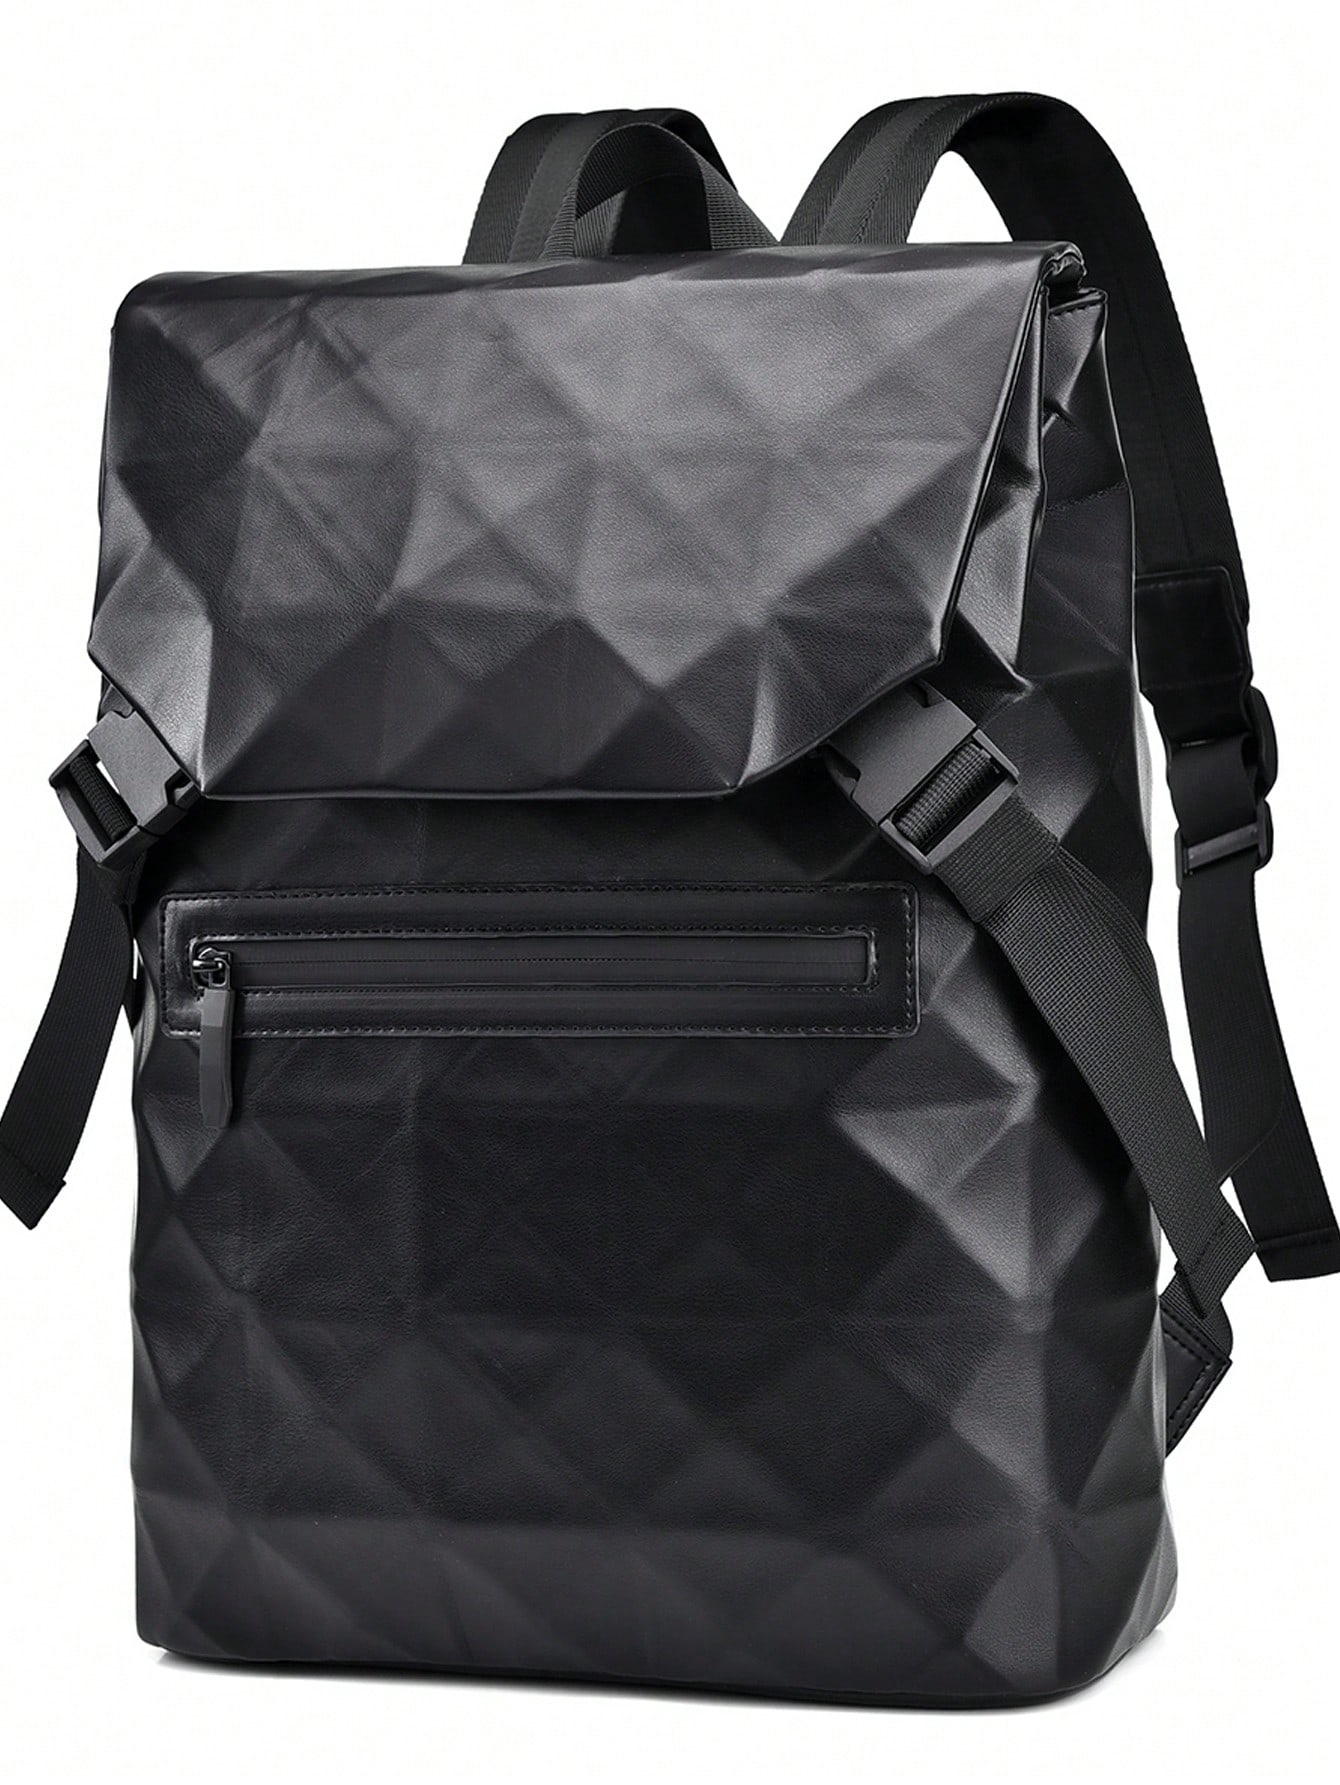 Рюкзак с ромбовидным узором для мужчин, черный розовая многофункциональная дорожная сумка большой емкости с молнией сверху светло серый